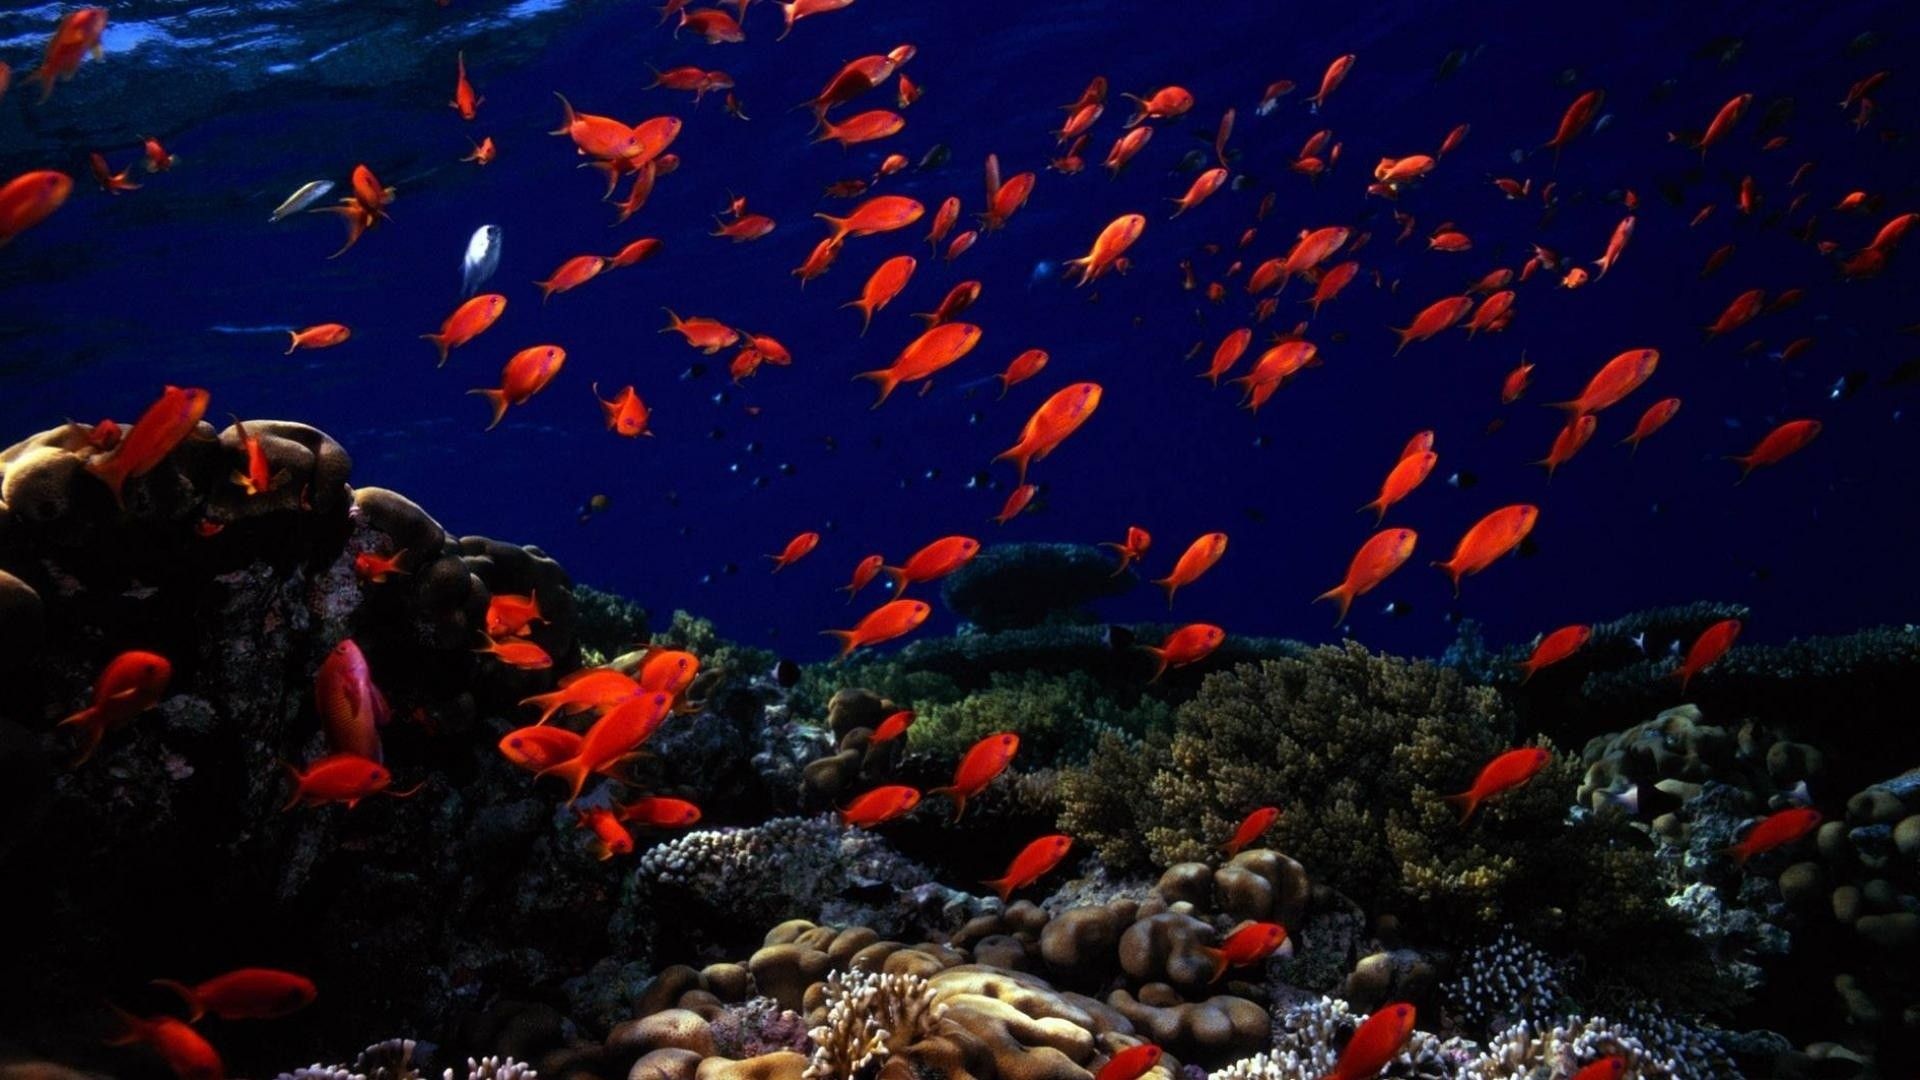 Under Water Wallpaper, Red Fish Underwater Image